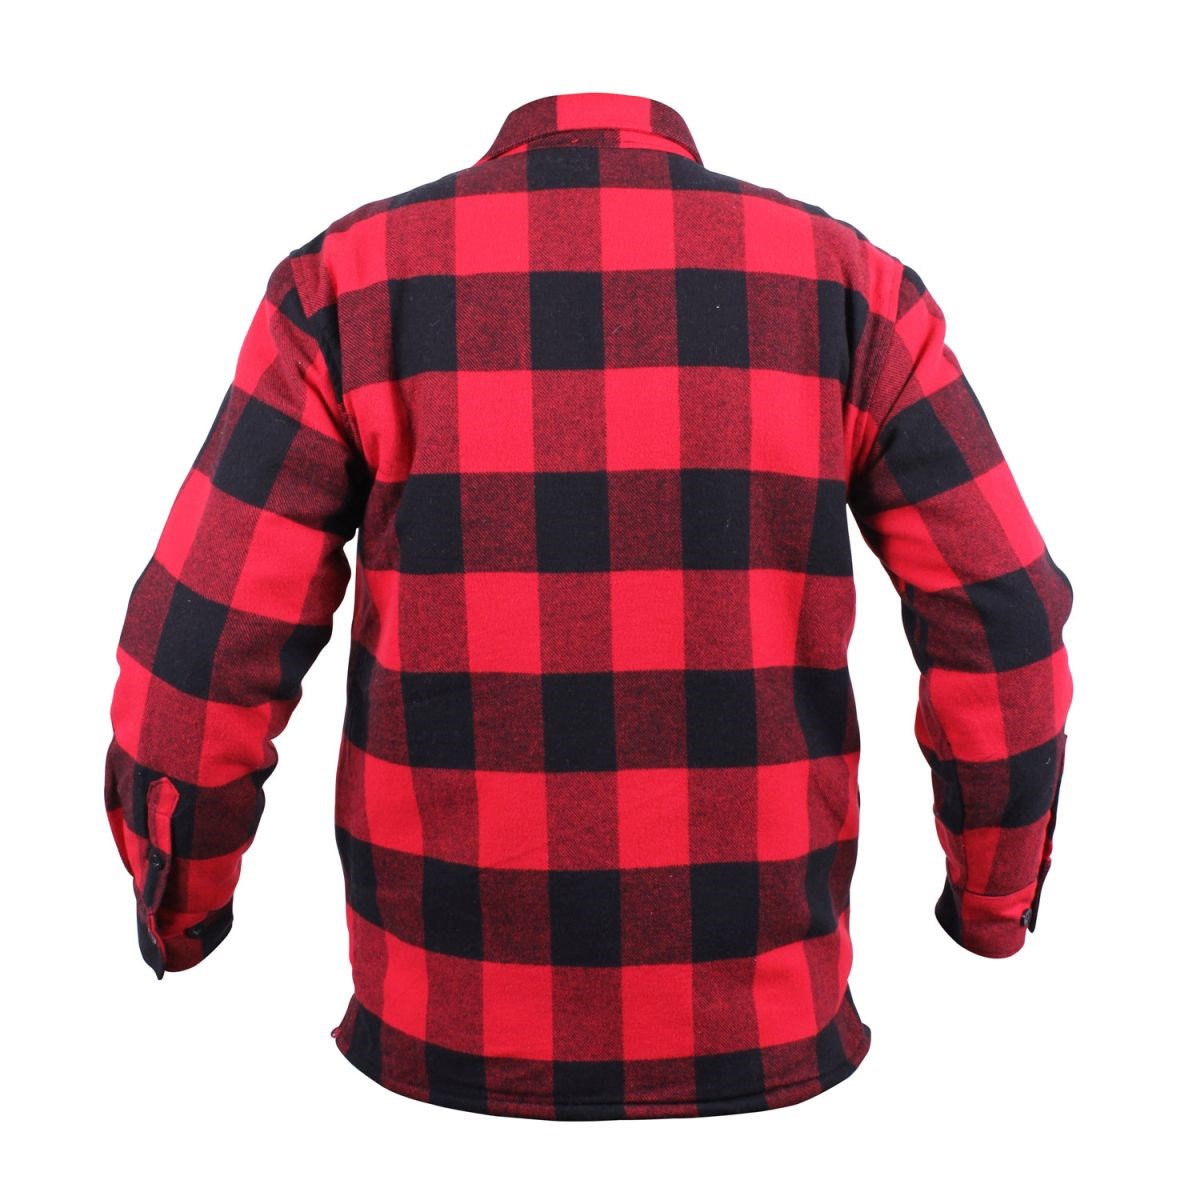 Lumberjack plaid shirt warm RED ROTHCO 3739RED L-11